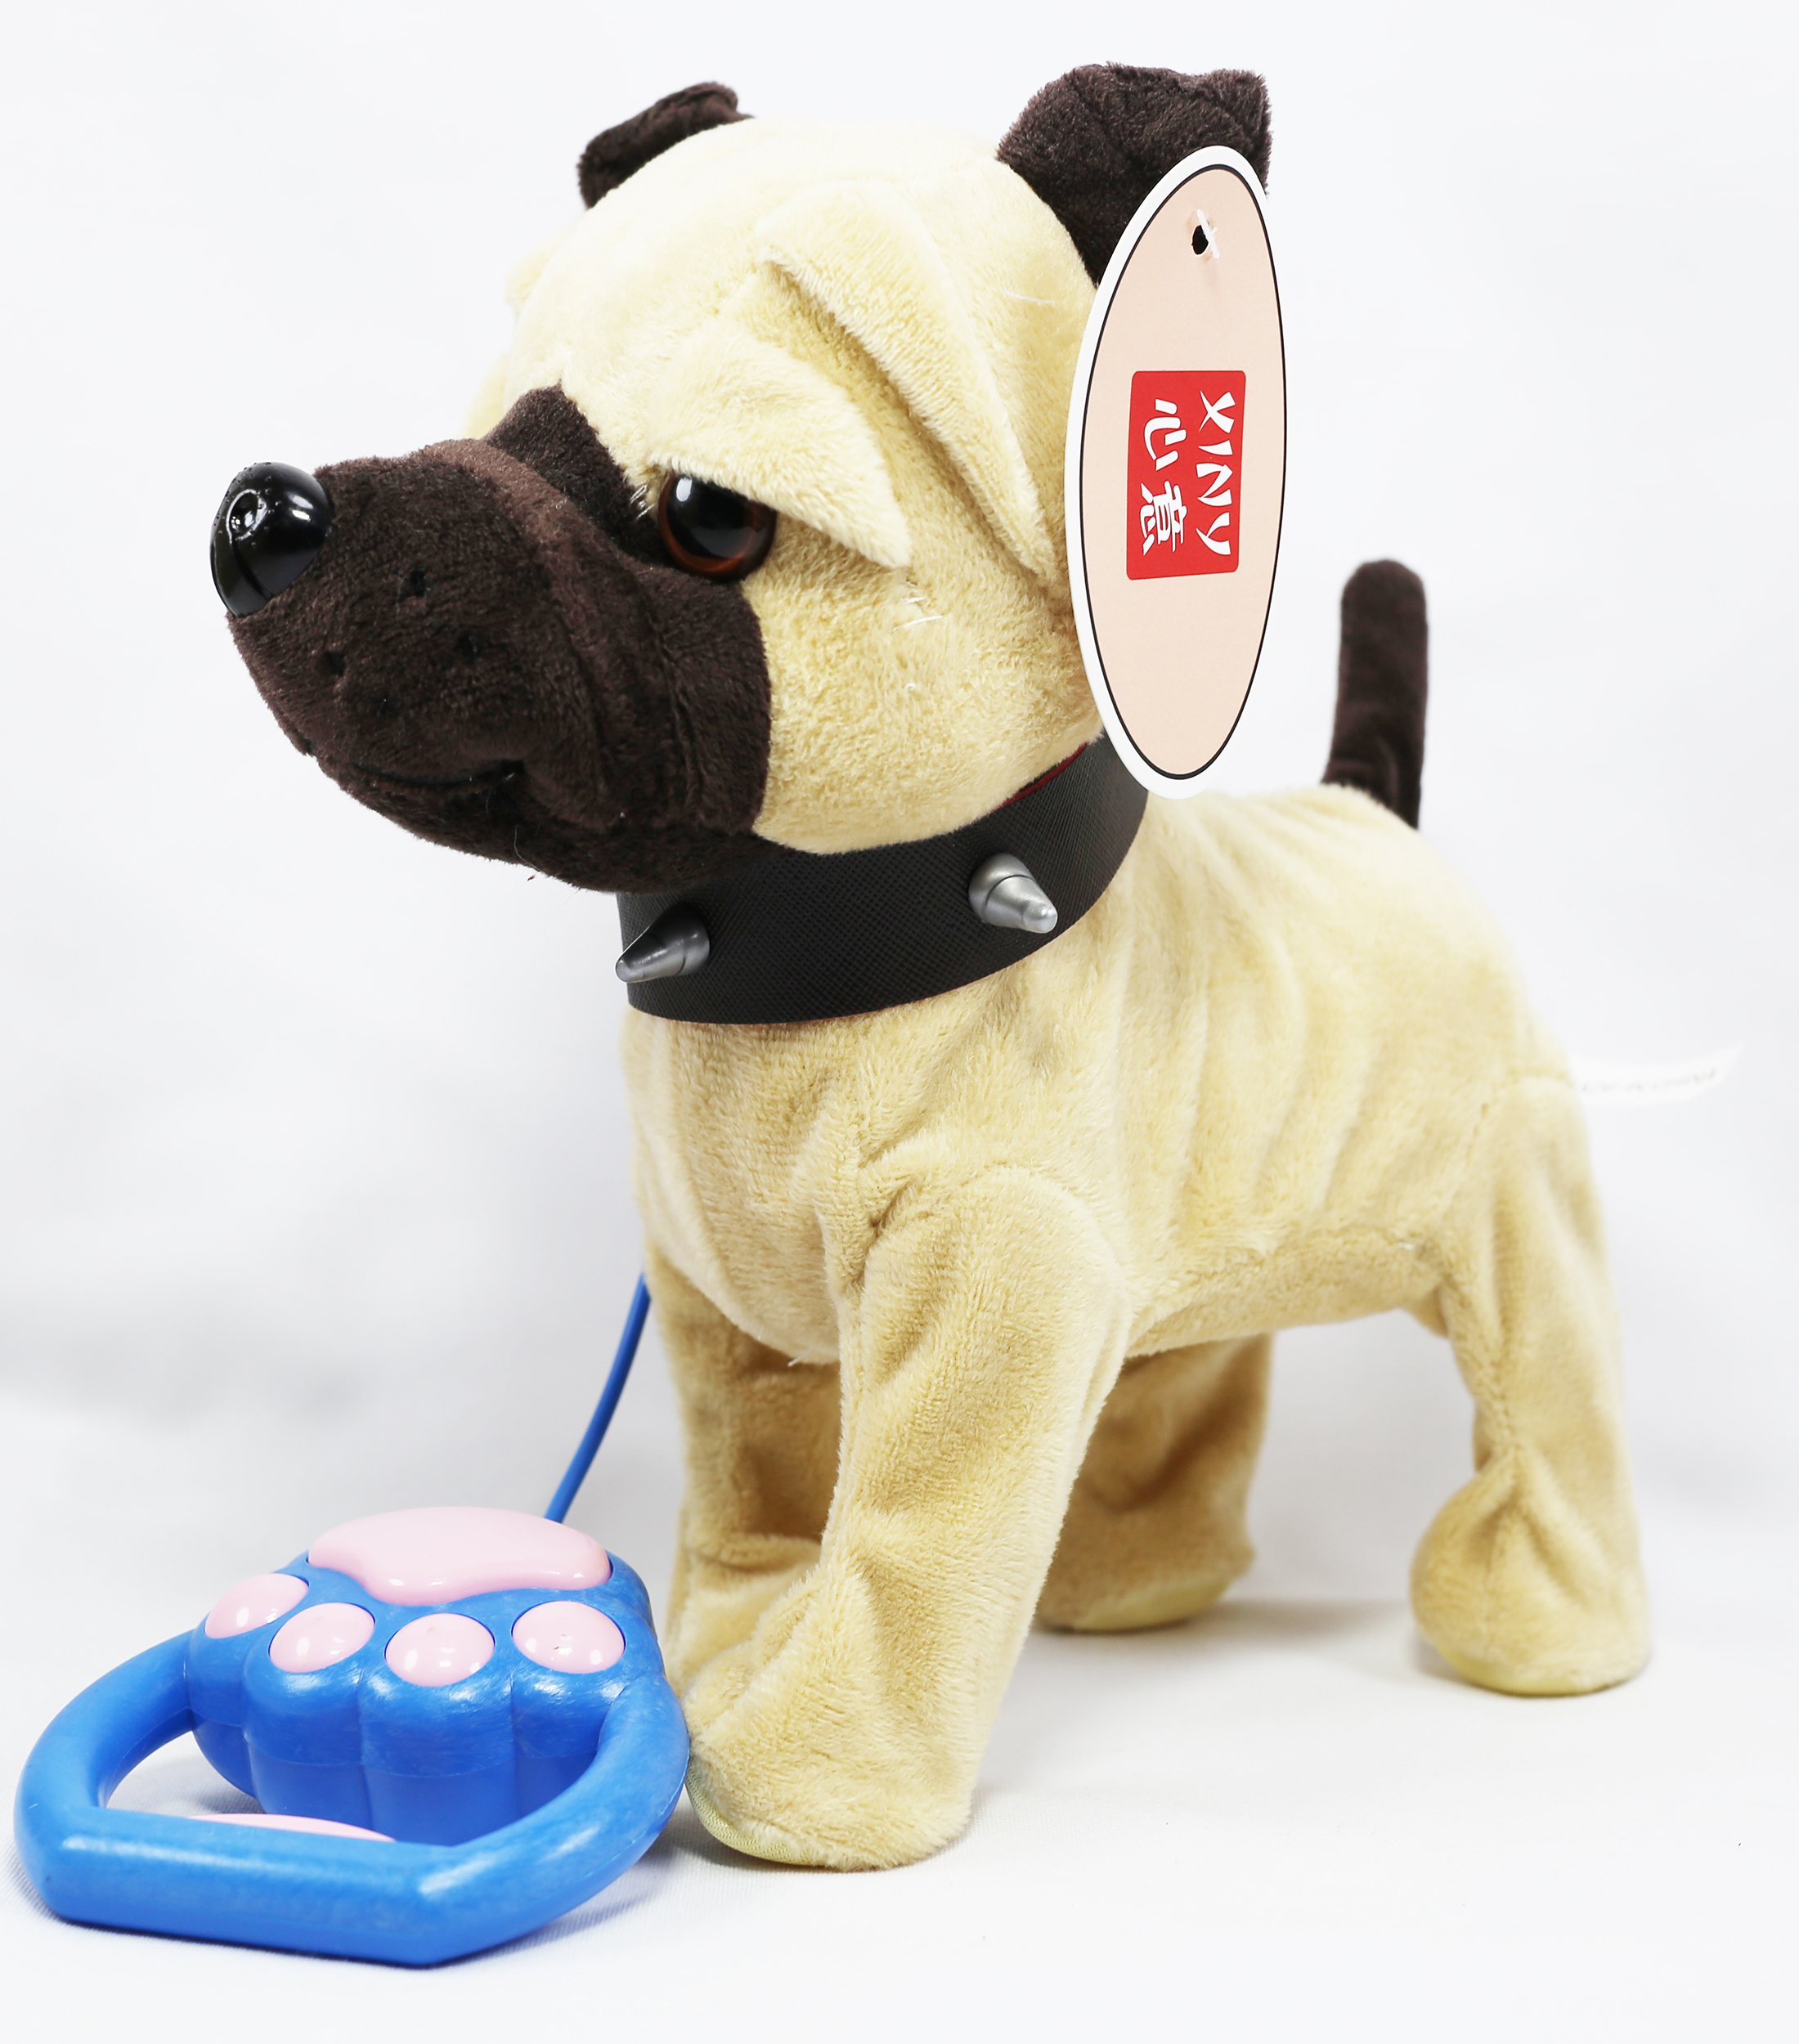 Perro interactivo de juguete camina y ladra 1695-6 - Xiny de